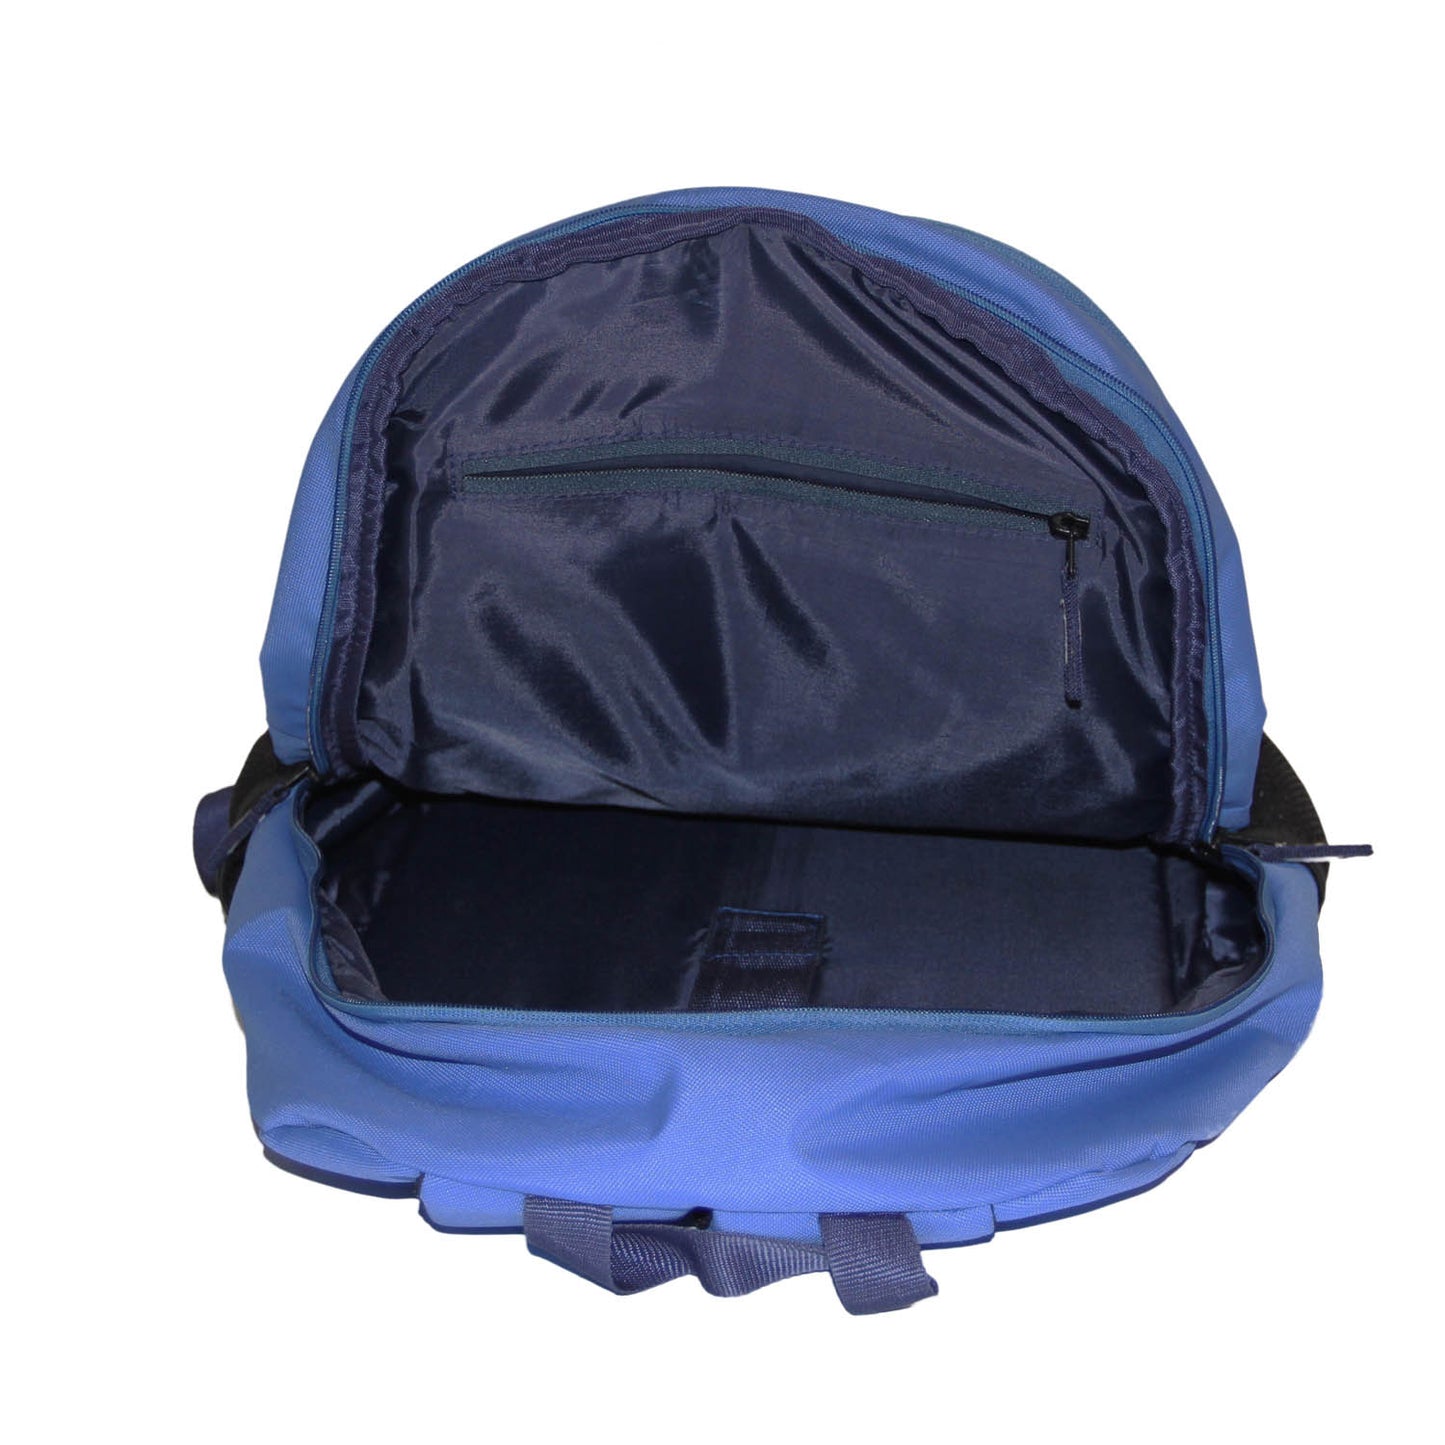 Blue-Black Polyester Backpack